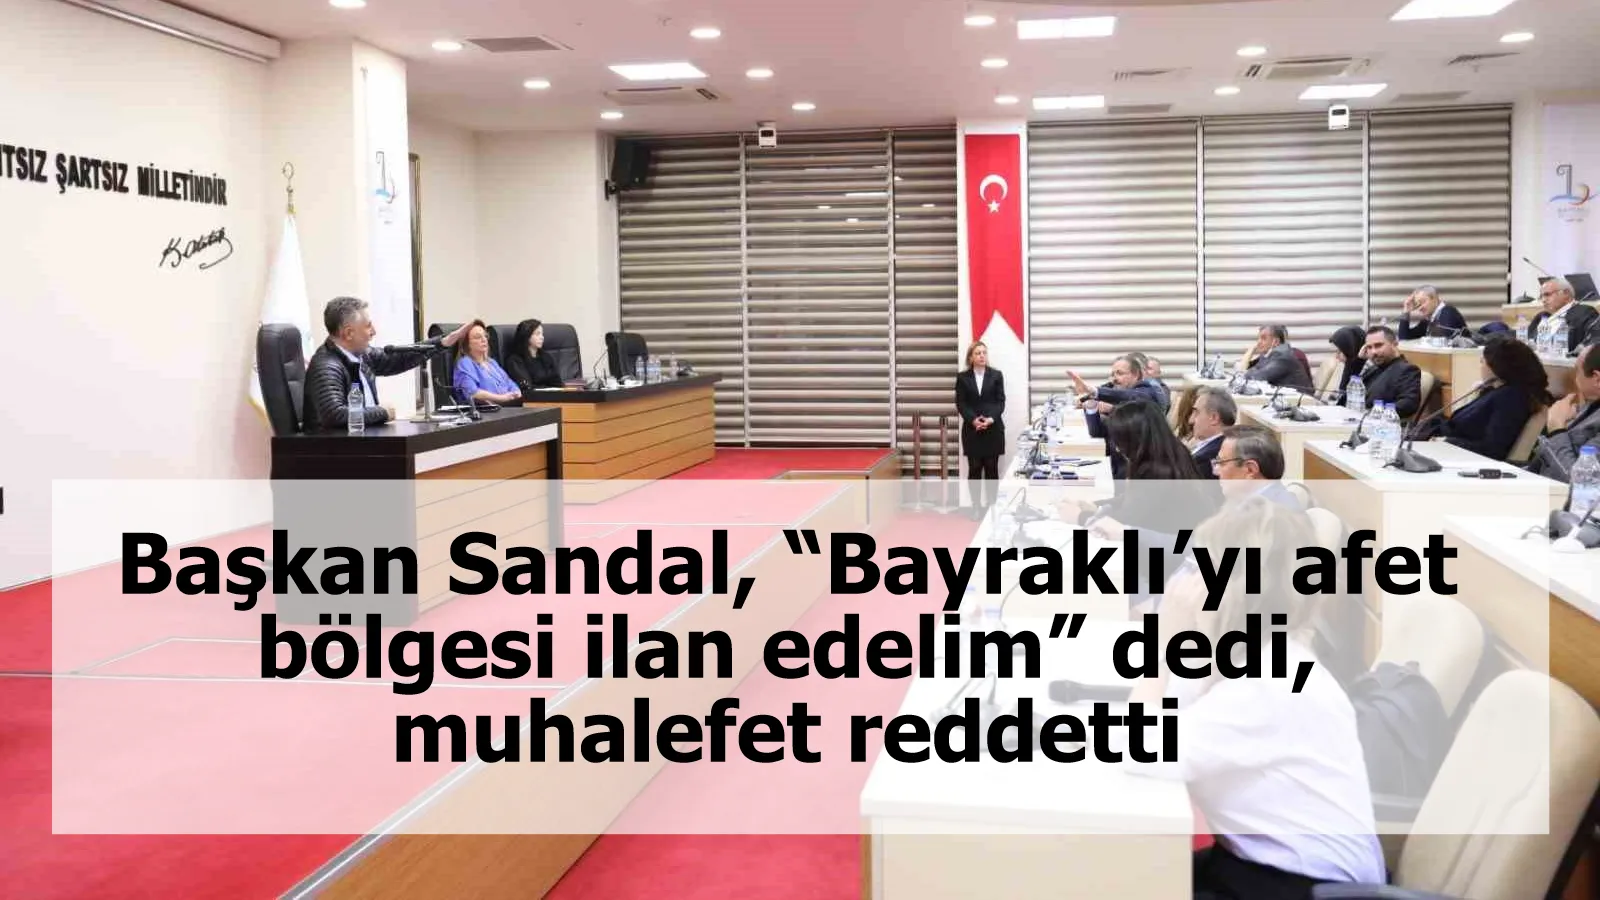 Başkan Sandal, “Bayraklı’yı afet bölgesi ilan edelim” dedi, muhalefet reddetti